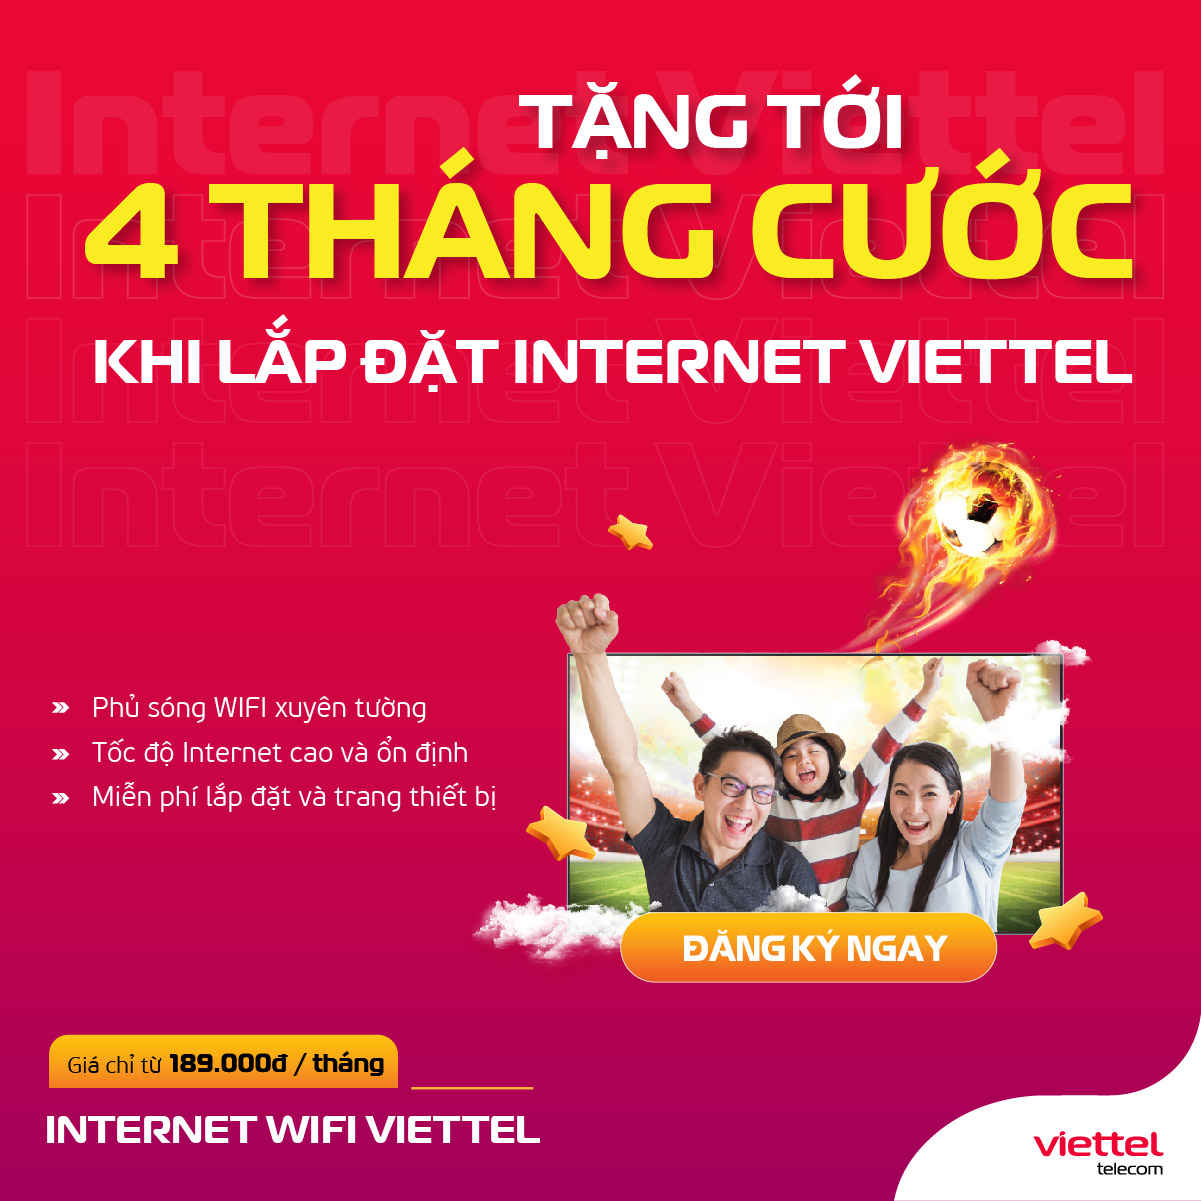 Cổng thông tin chính thức dịch vụ Di động, Internet, Truyền hình Viettel